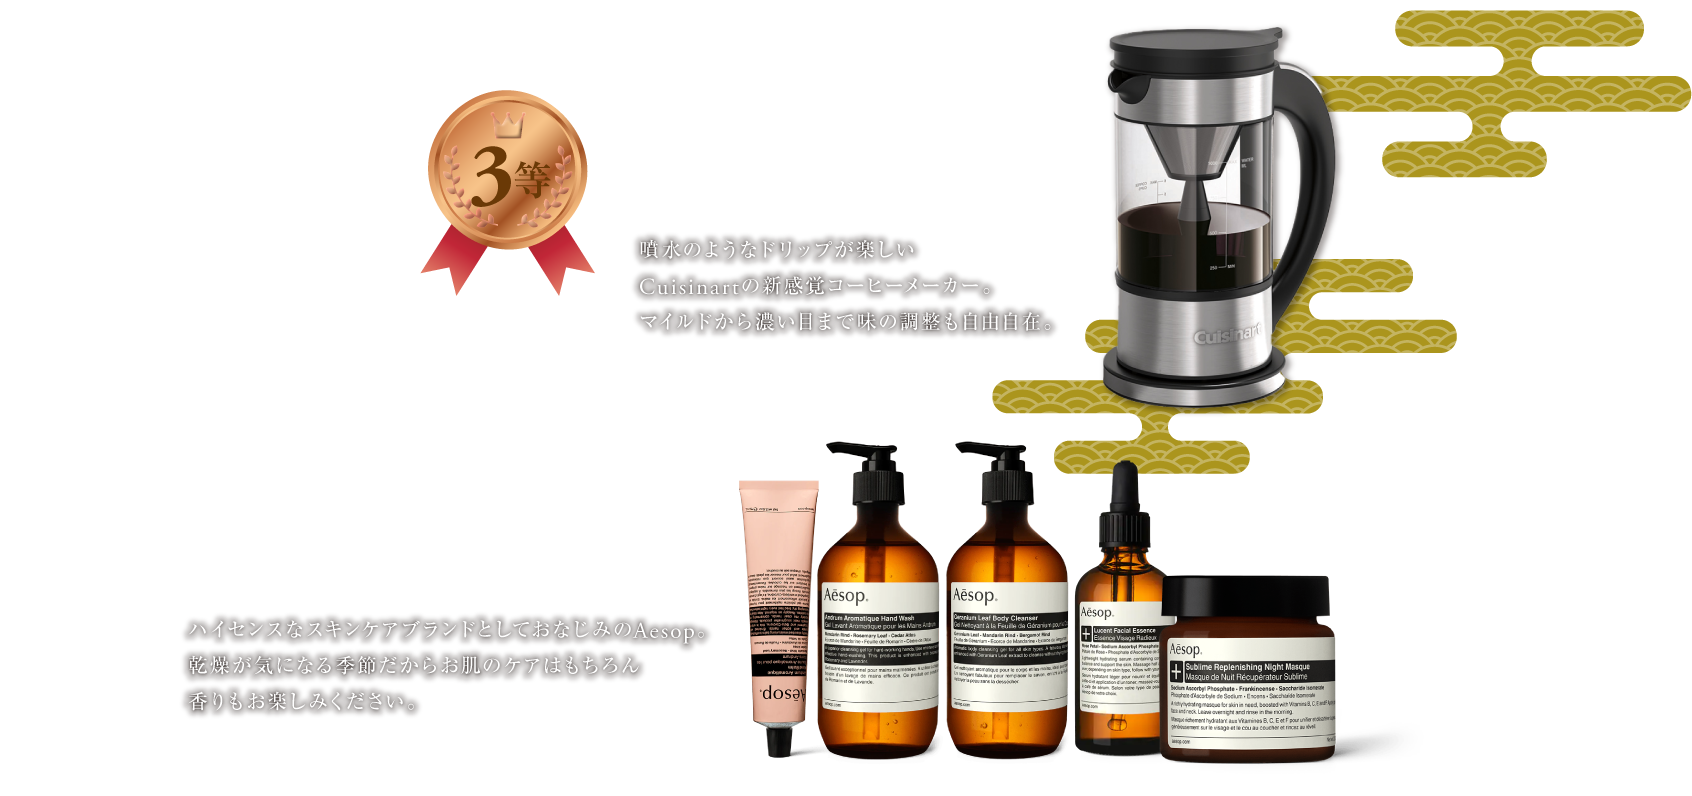 3等 Cuisinart Fountain Coffee Maker|4等 Aesop